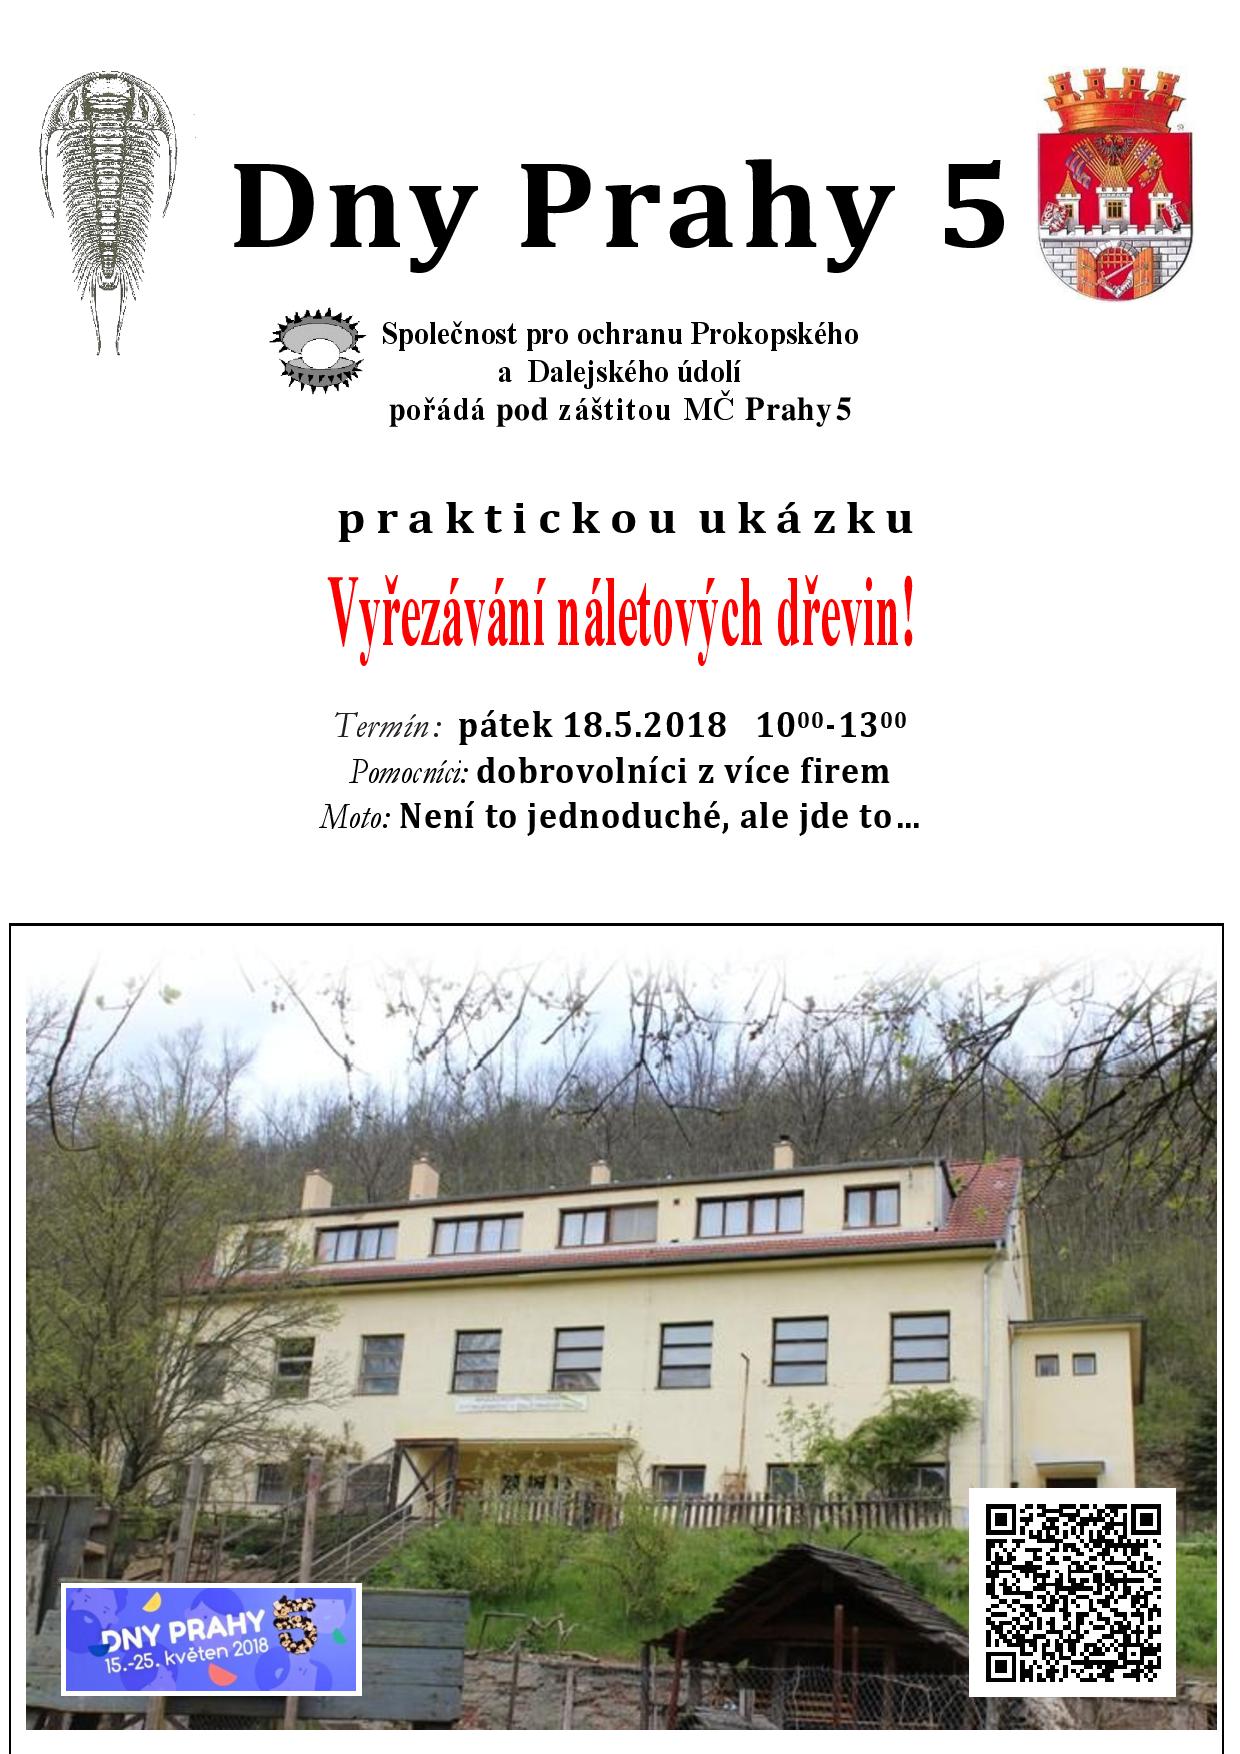 PDU 2018 Dny Prahy 5 ukazka vyrezavani naletovych drevin